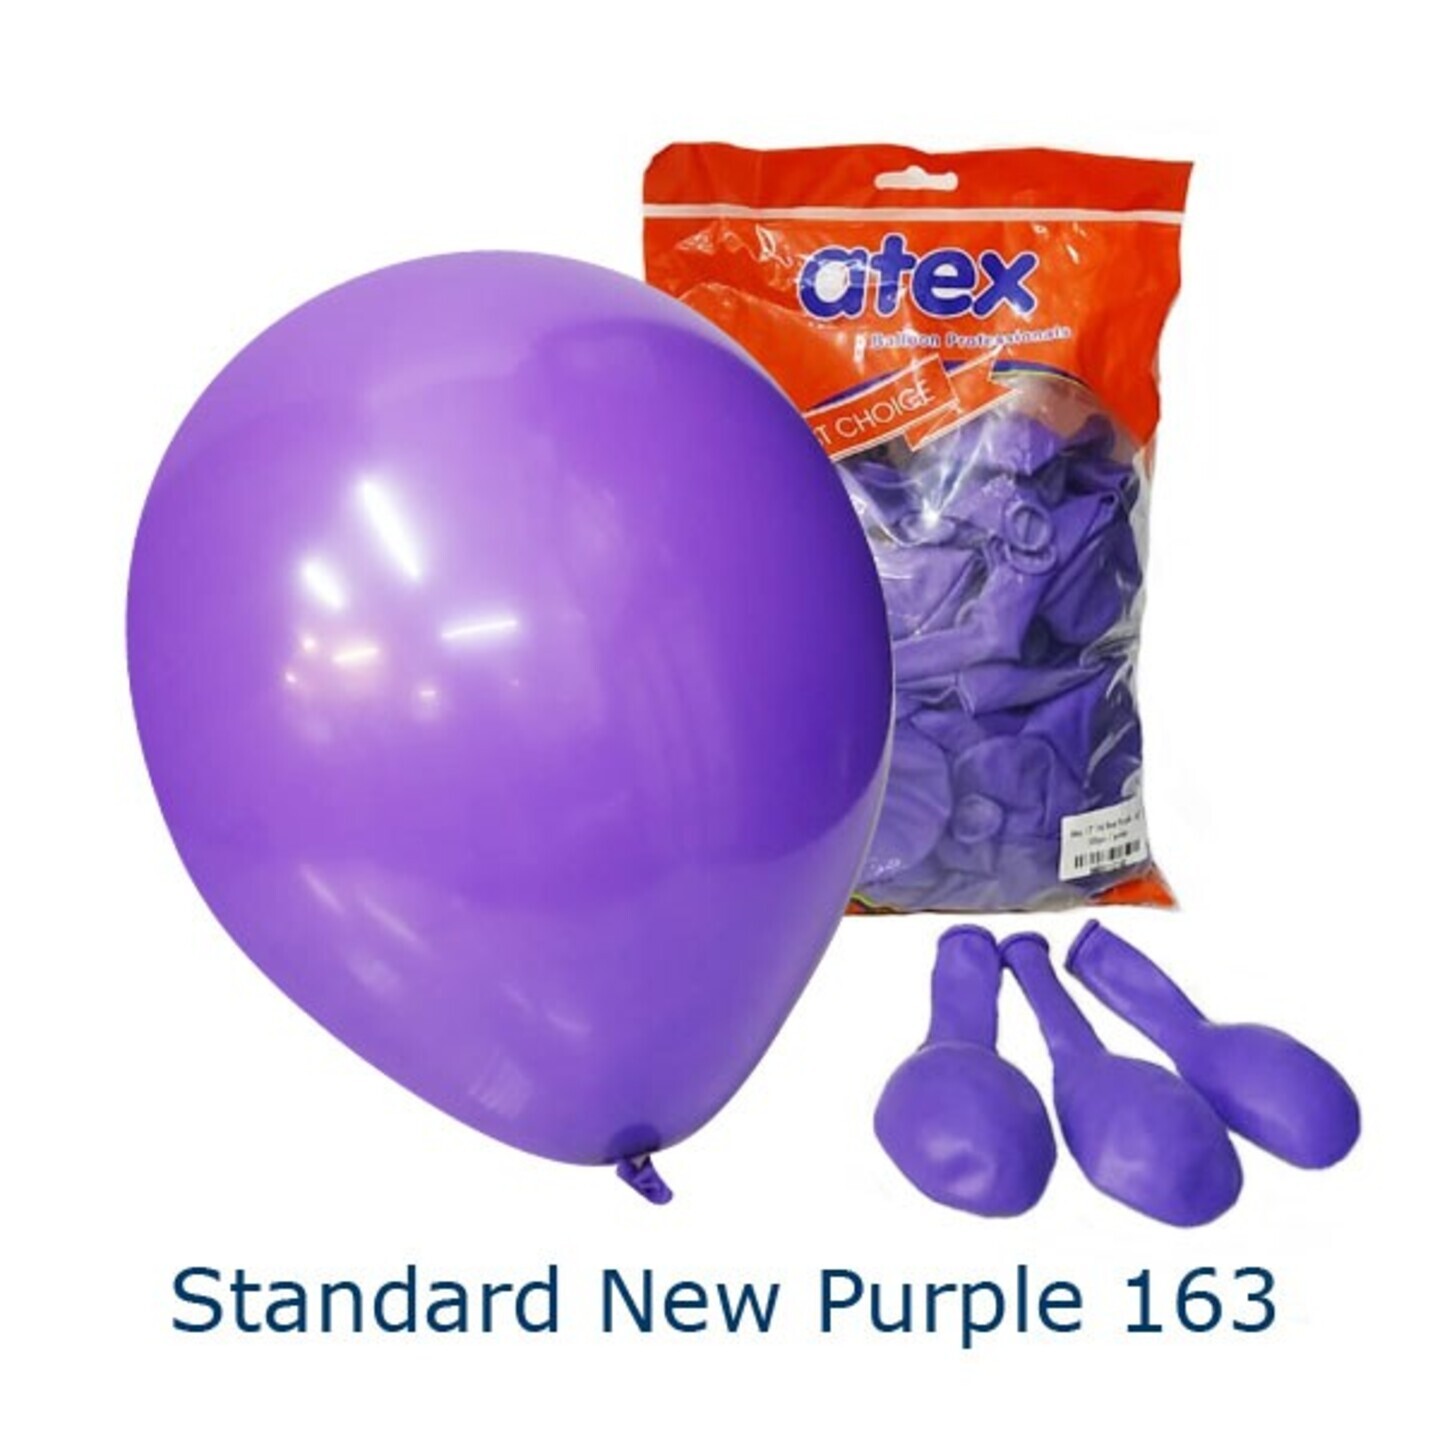 Standard New Purple 163